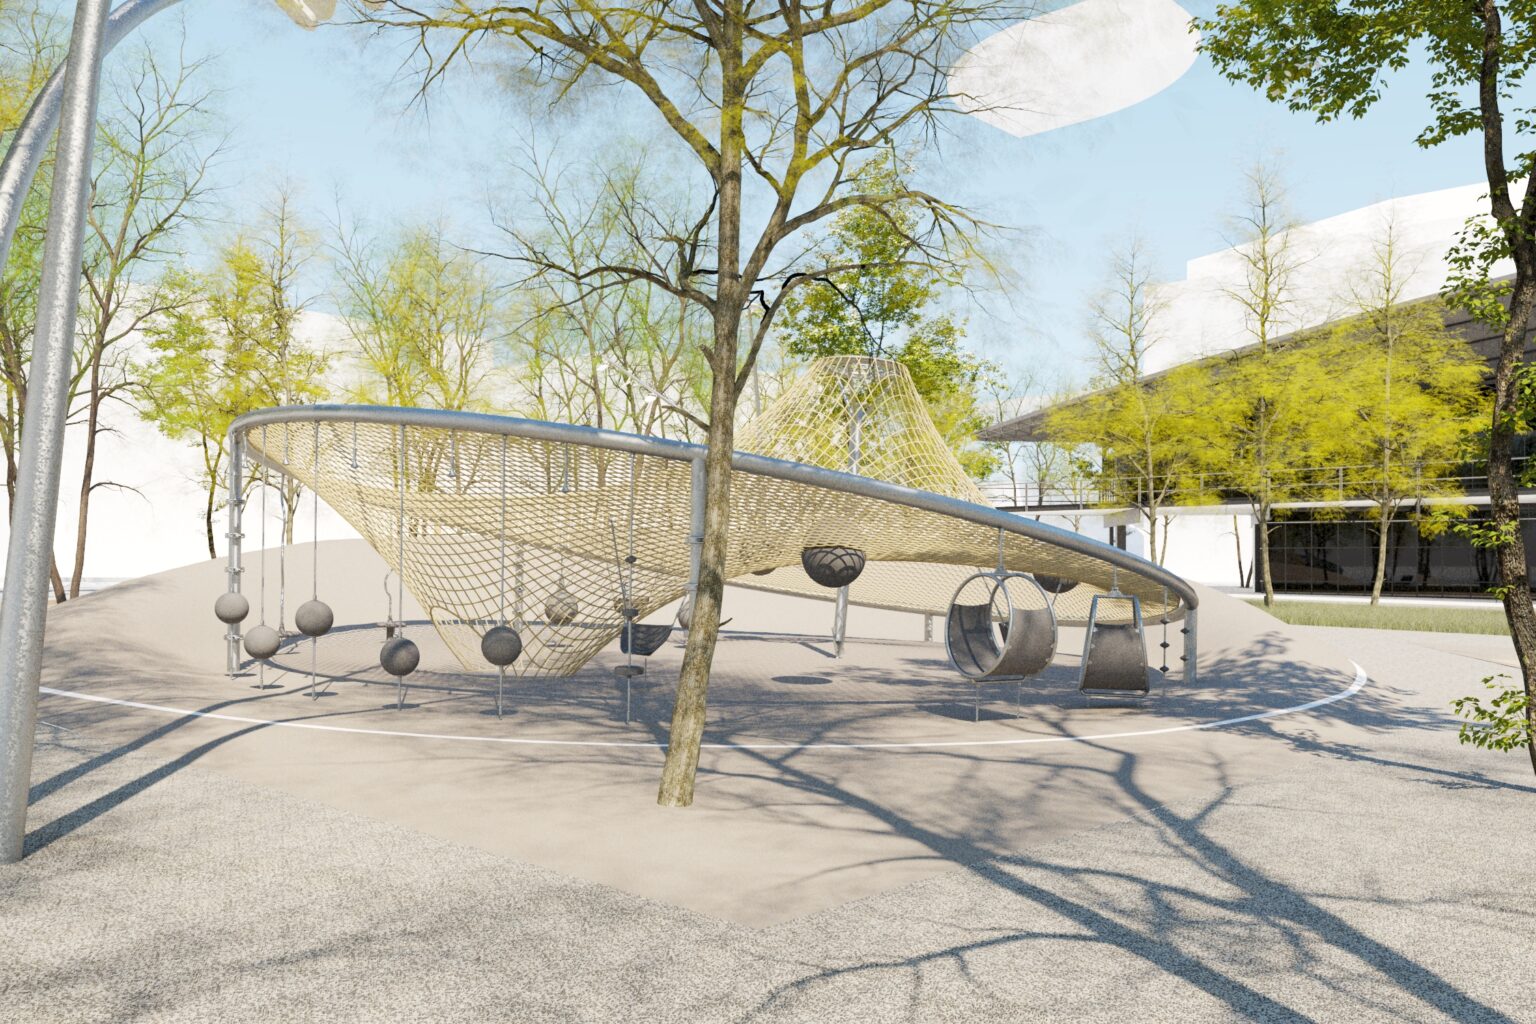 Empiezan las obras de reurbanización de la plaza del Canòdrom para convertirla en un espacio de uso ciudadano